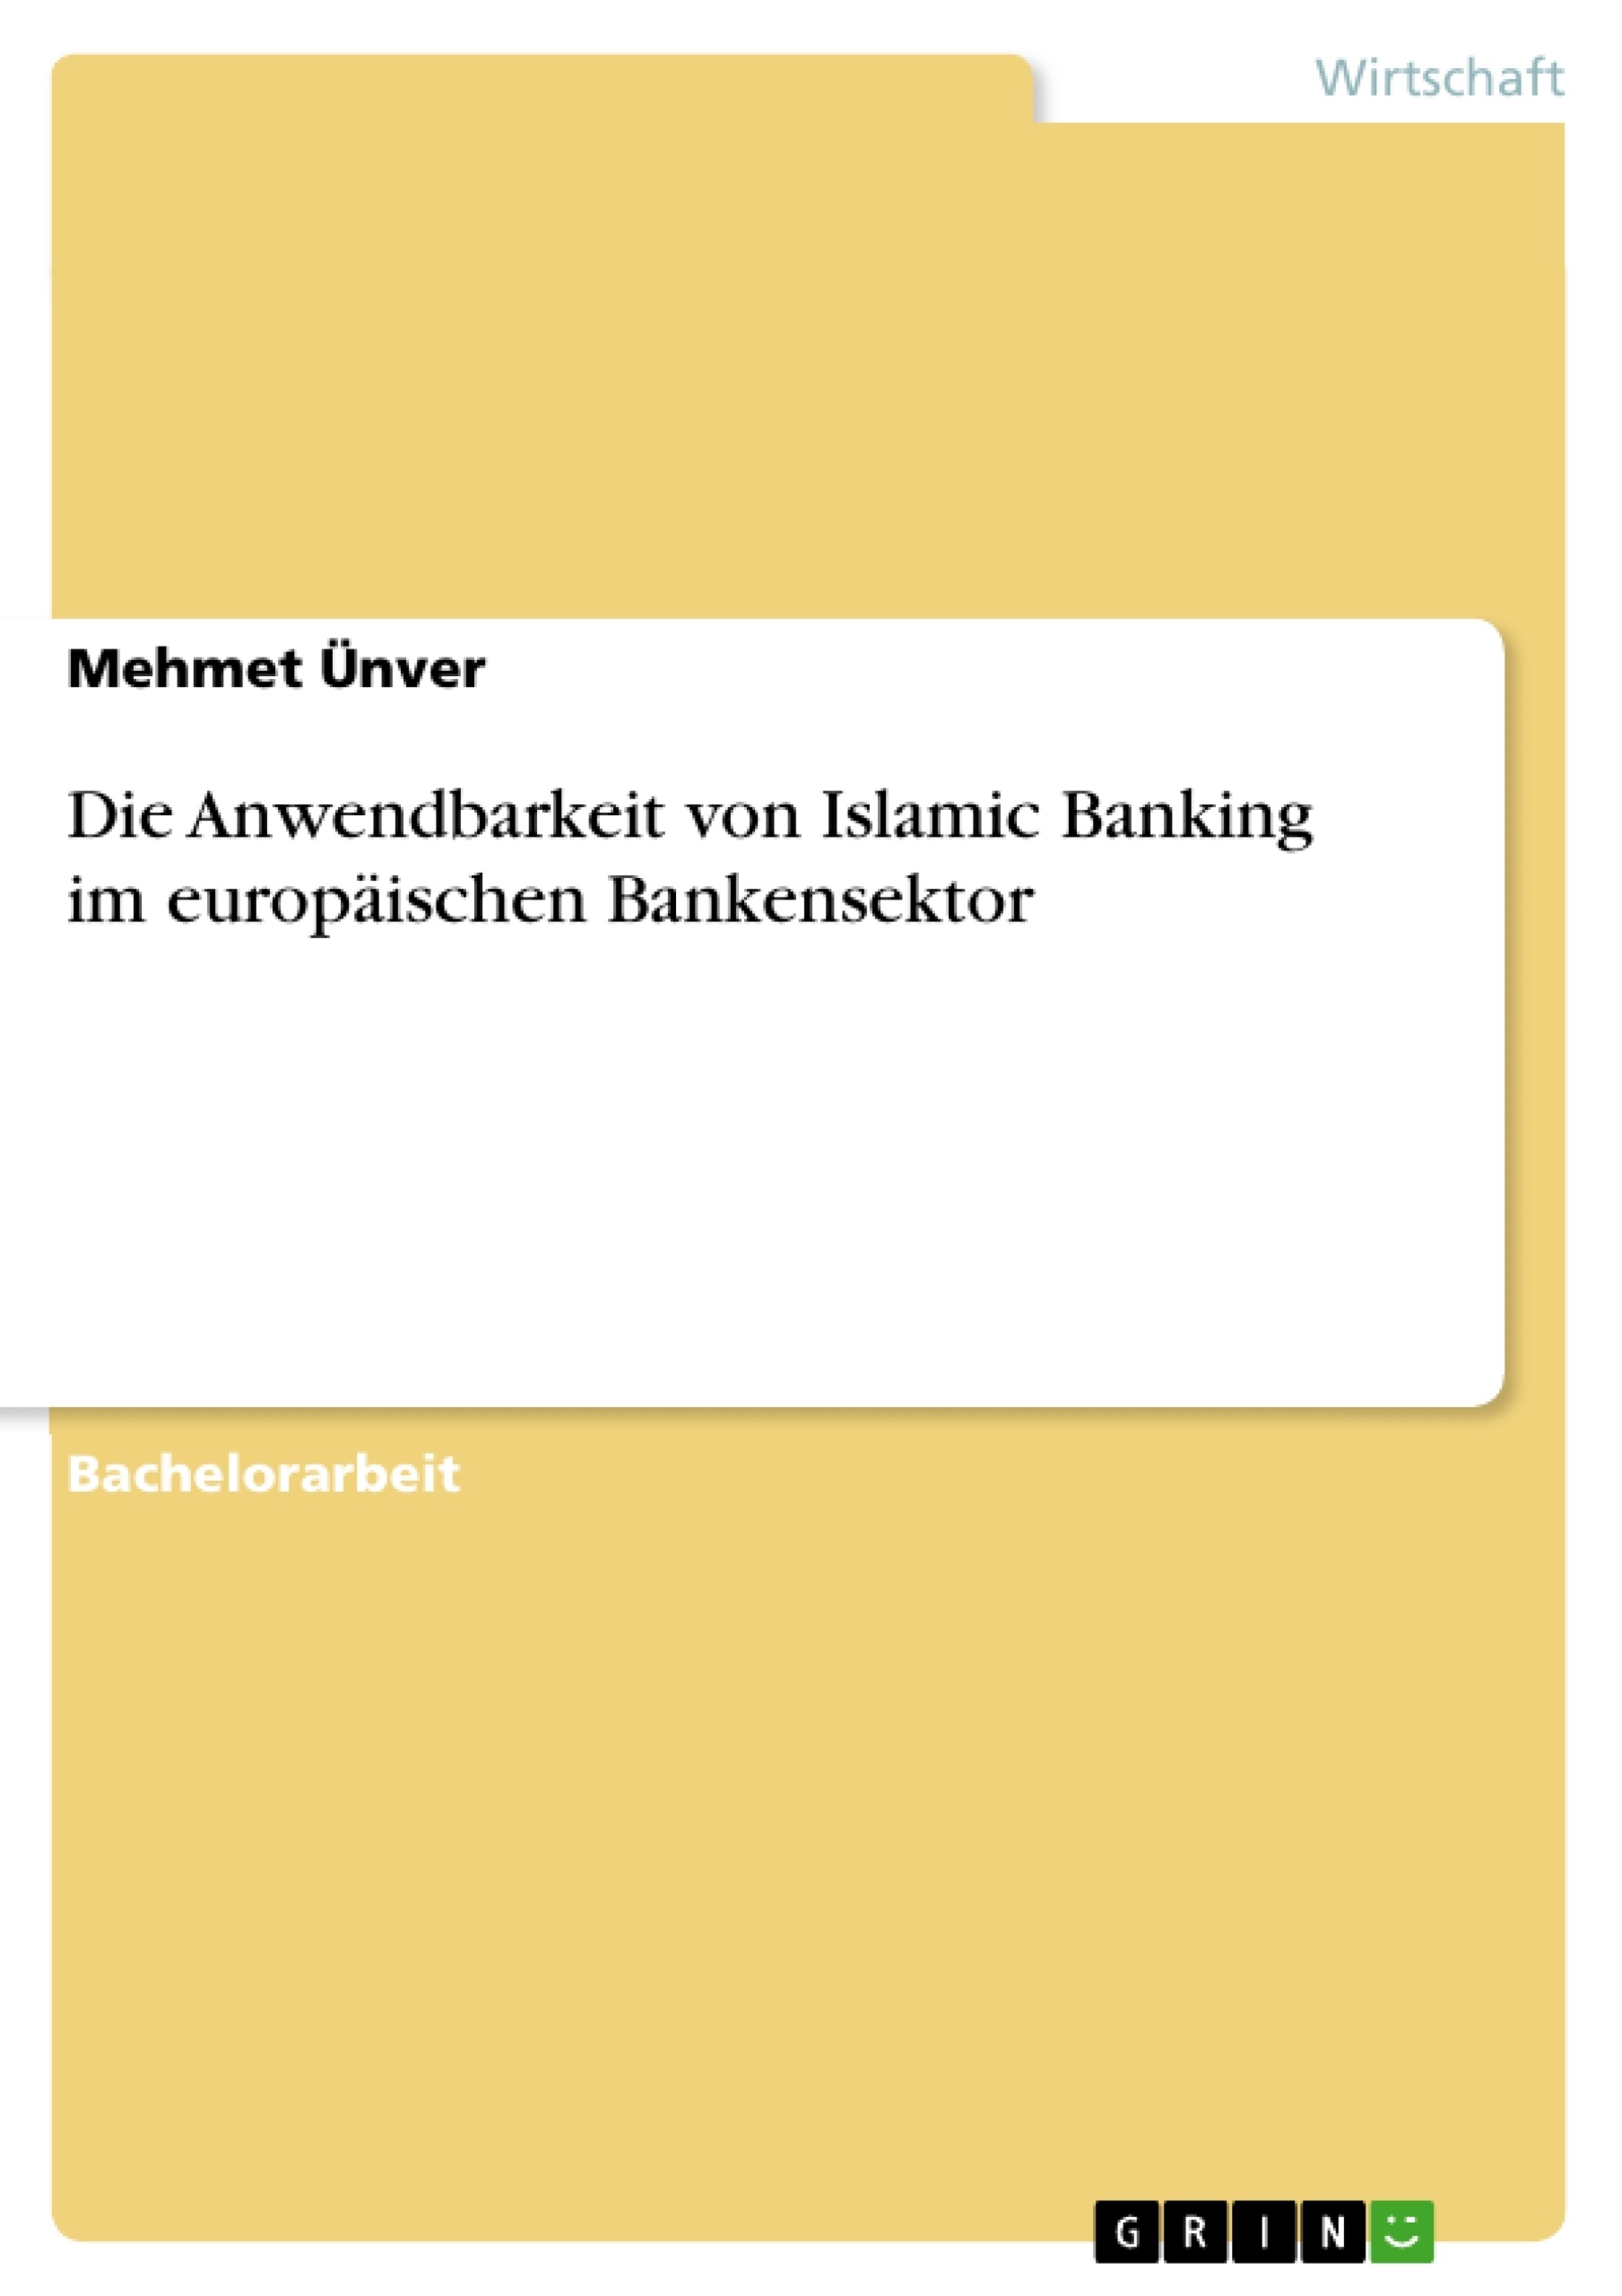 Título: Die Anwendbarkeit von Islamic Banking im europäischen Bankensektor